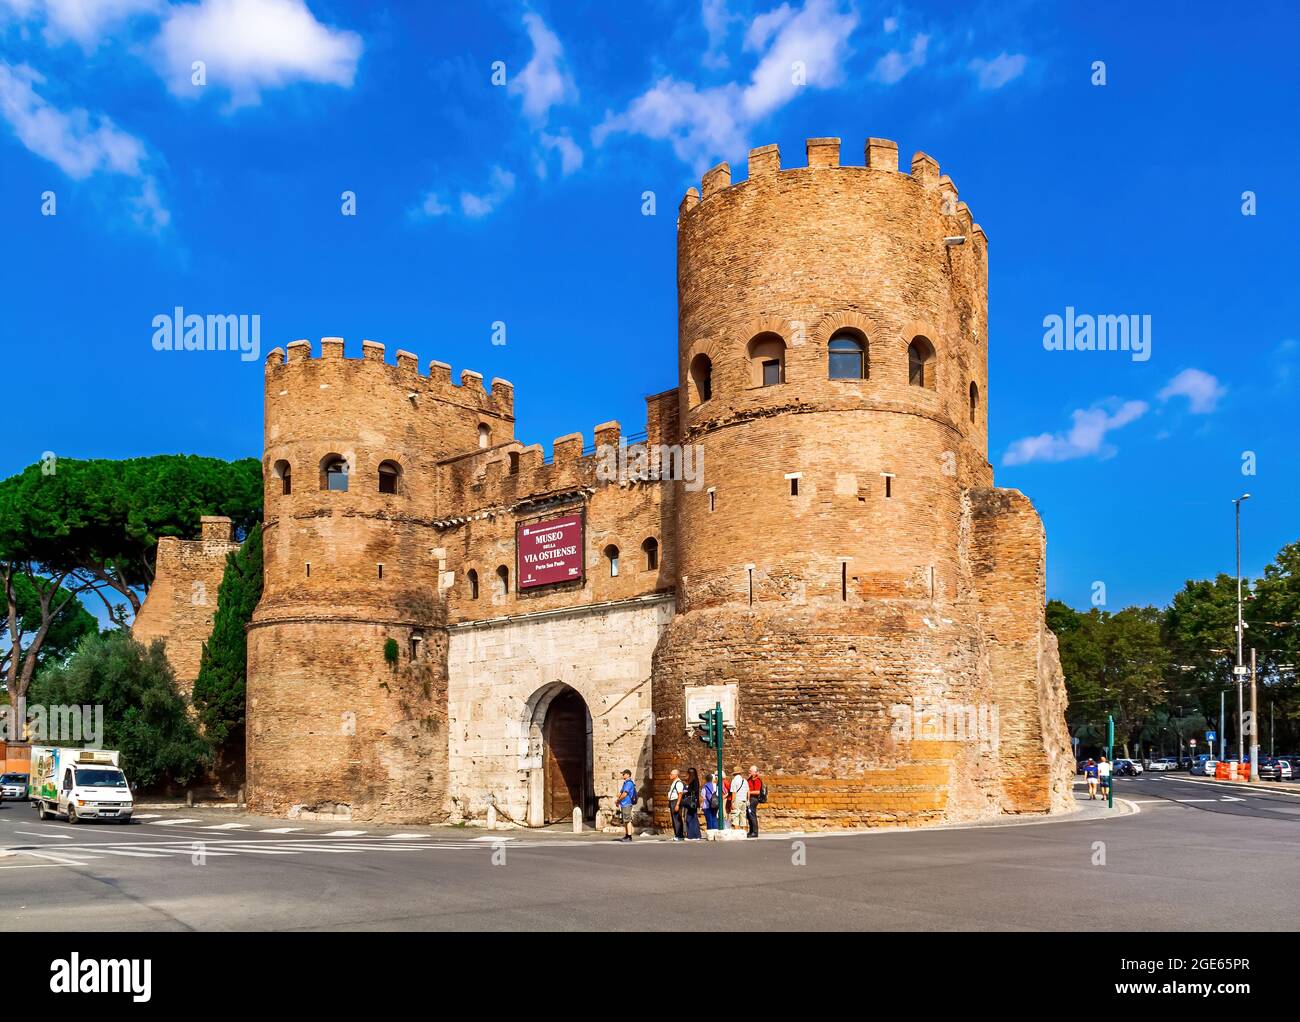 Rom, Italien - 20. Mai 2012: Porta San Paolo ist ein erhaltenes Stadttor aus dem 3. Jahrhundert, Teil der Aurelianischen Mauer in Rom, Italien. Es ist die Heimat des Muse Stockfoto